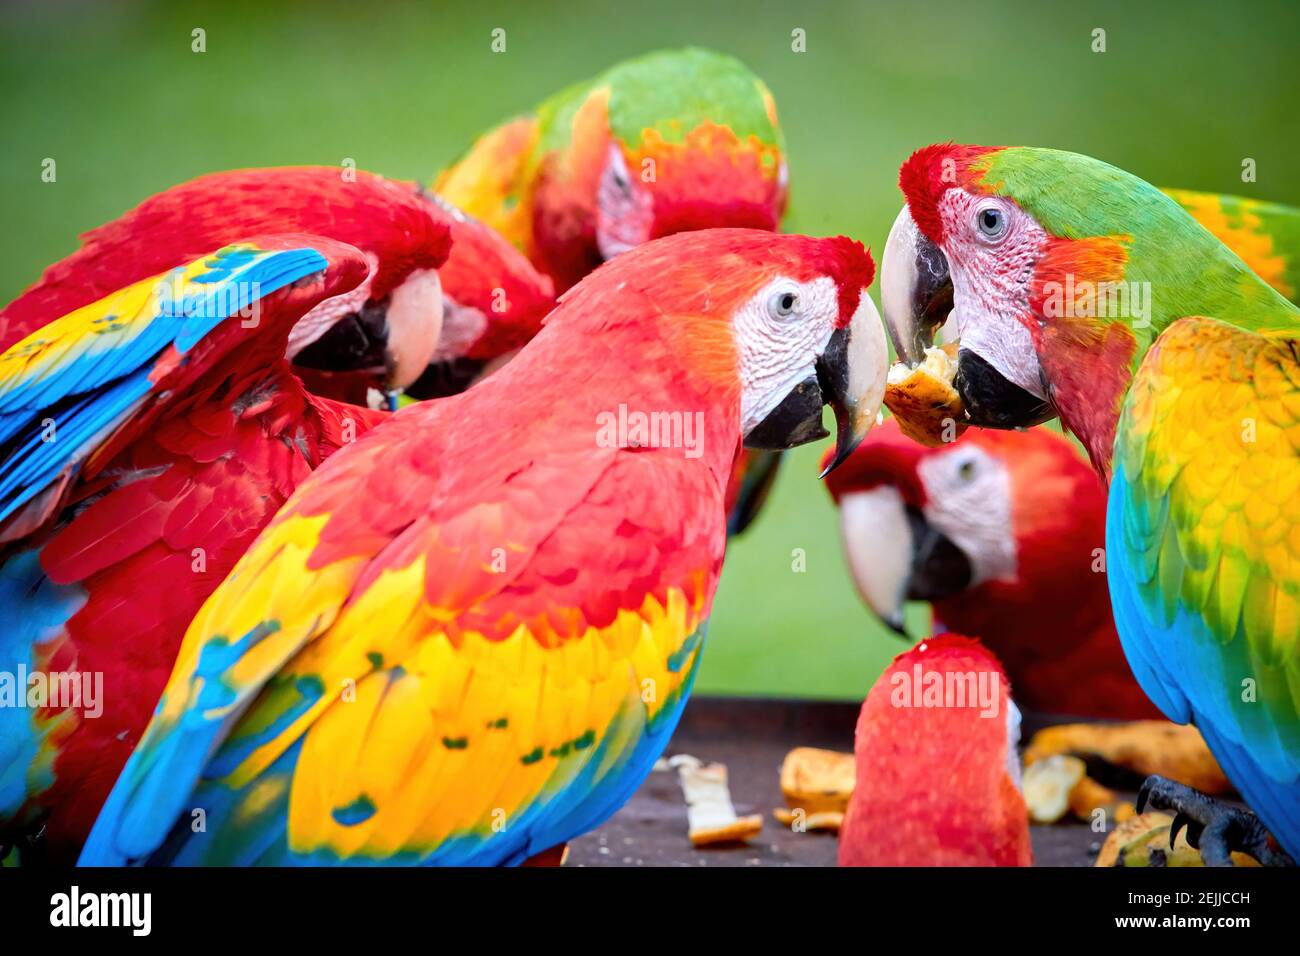 Gruppo di pappagalli selvatici di Ara, Ara macao e ibridi di Scarlet Macaw e Grande macaw verde, foto ritratto di pappagalli colorati amazzoni in un gruppo, dare da mangiare Foto Stock